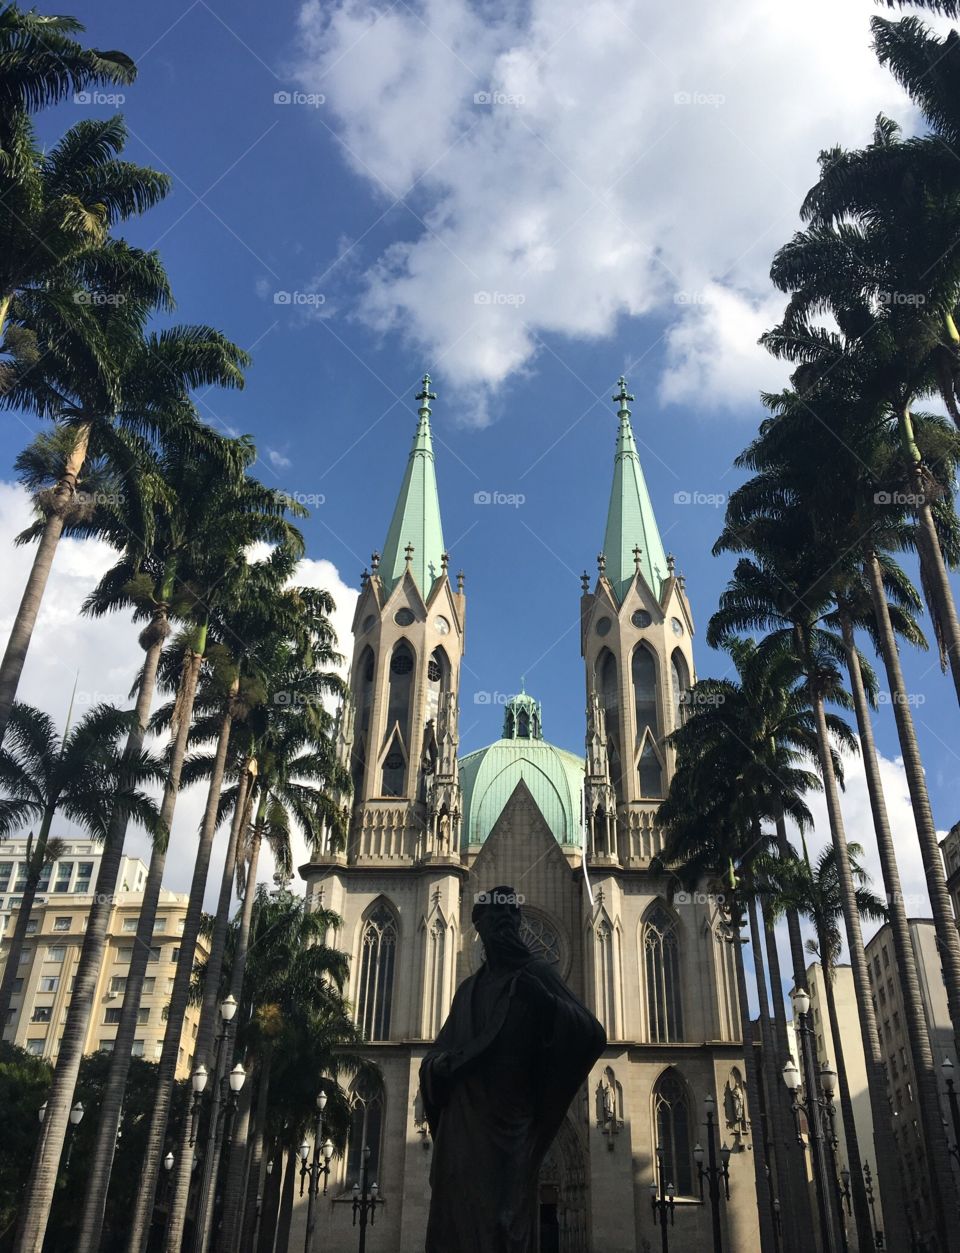 Cathedral “Sé” - SP - BRAZIL 